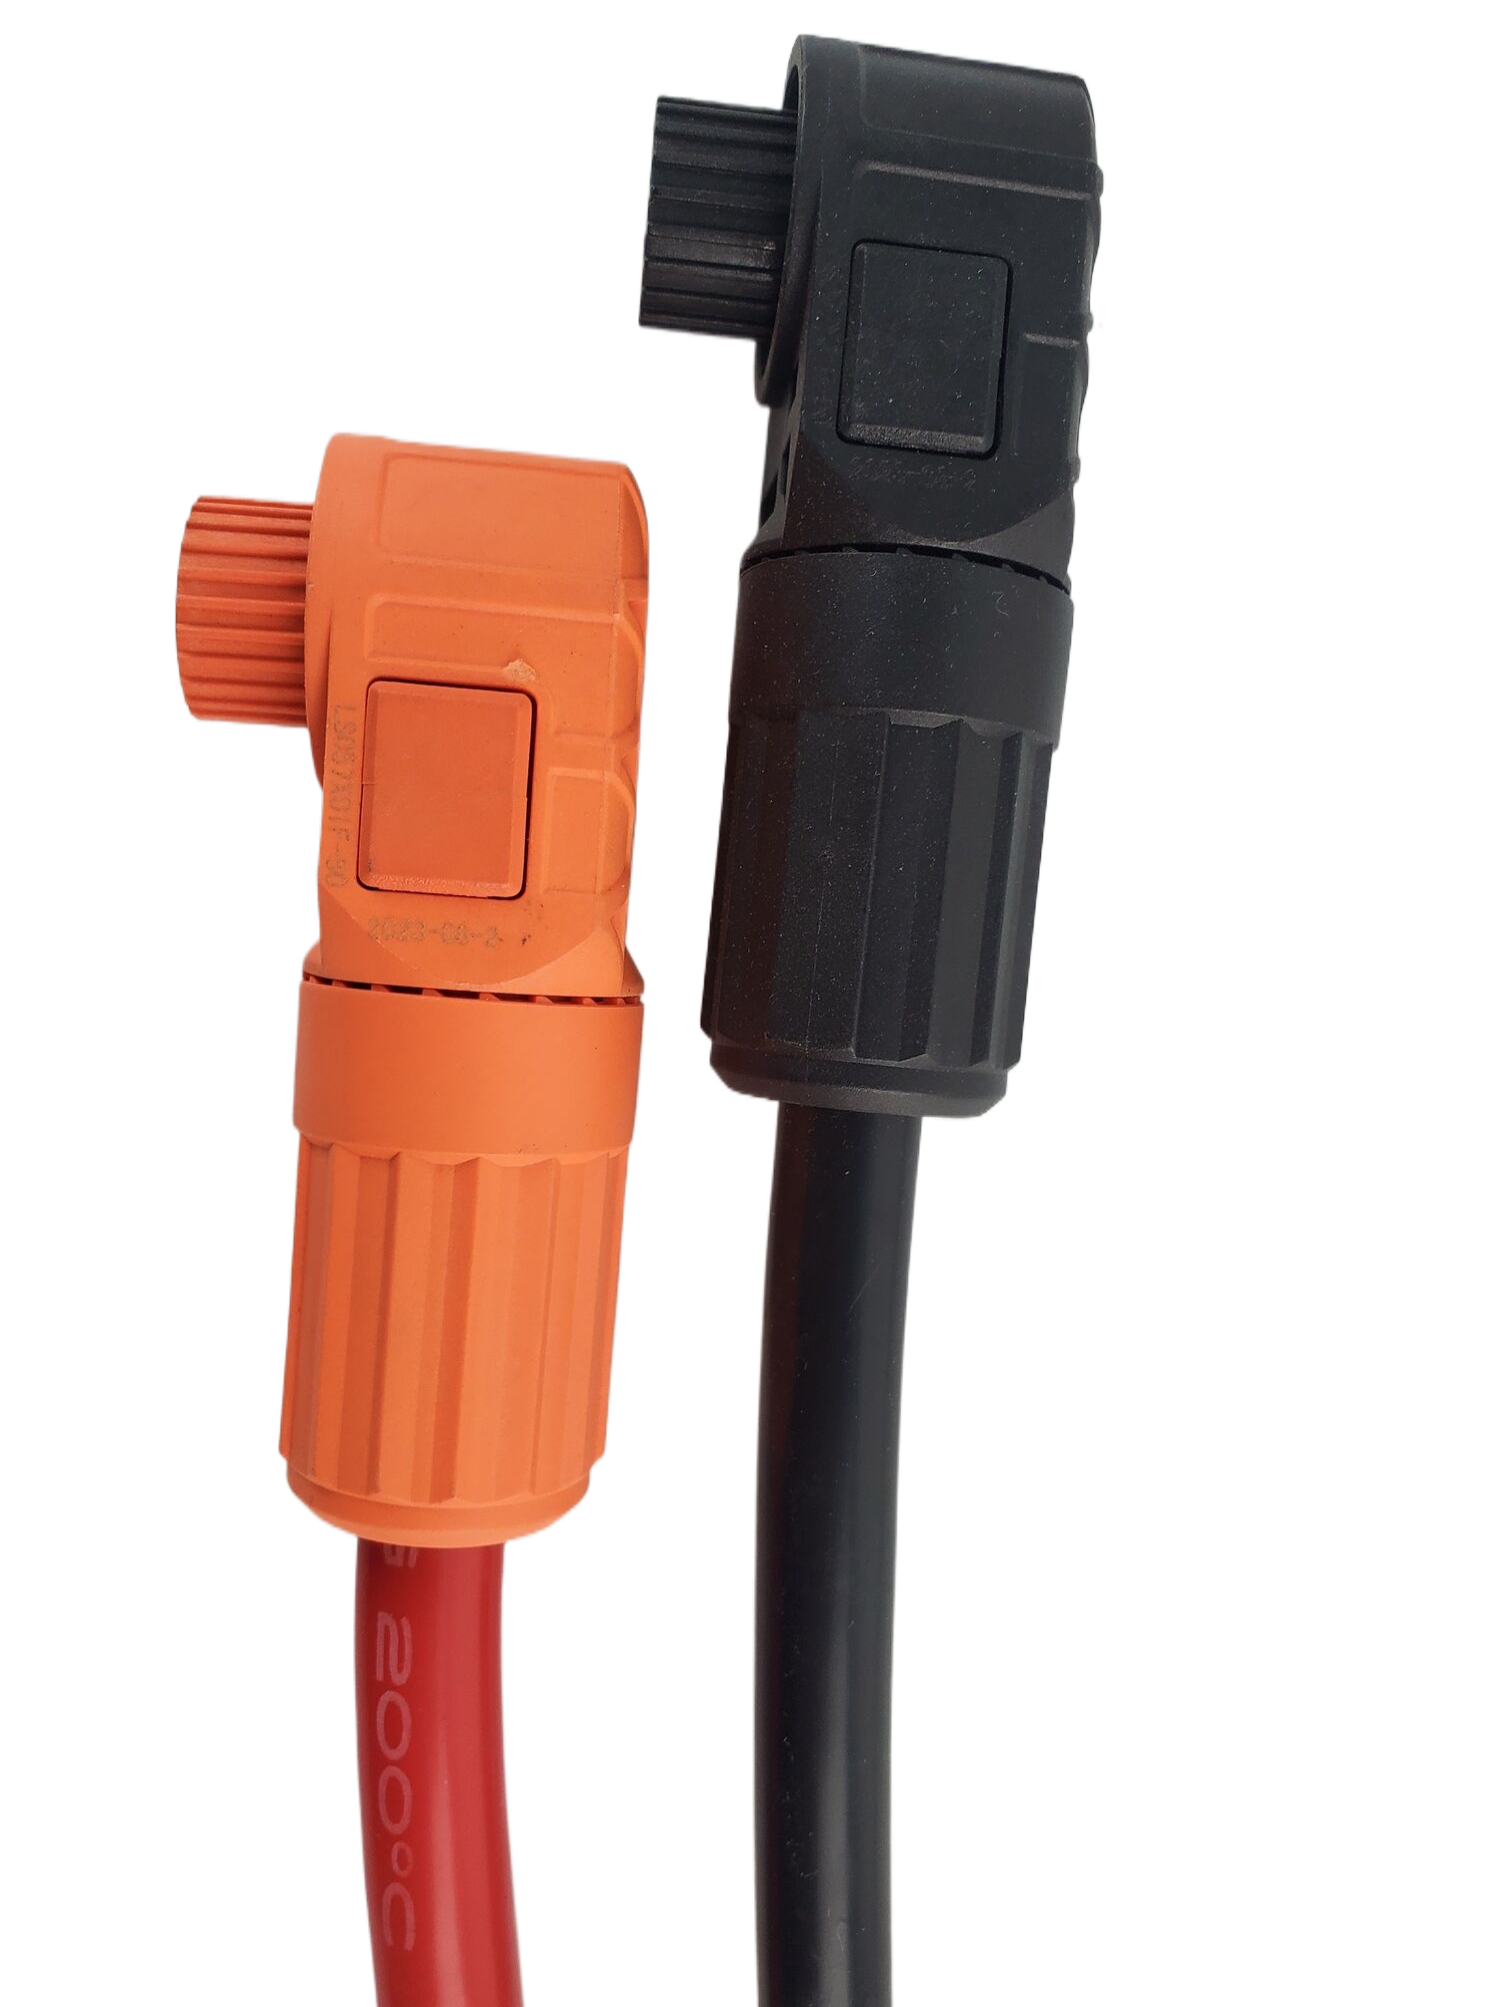 LiFePO4-Batterie-Spezialklemmen und Verbindungsdrähte für Lithiumbatterien für DIY-Kits